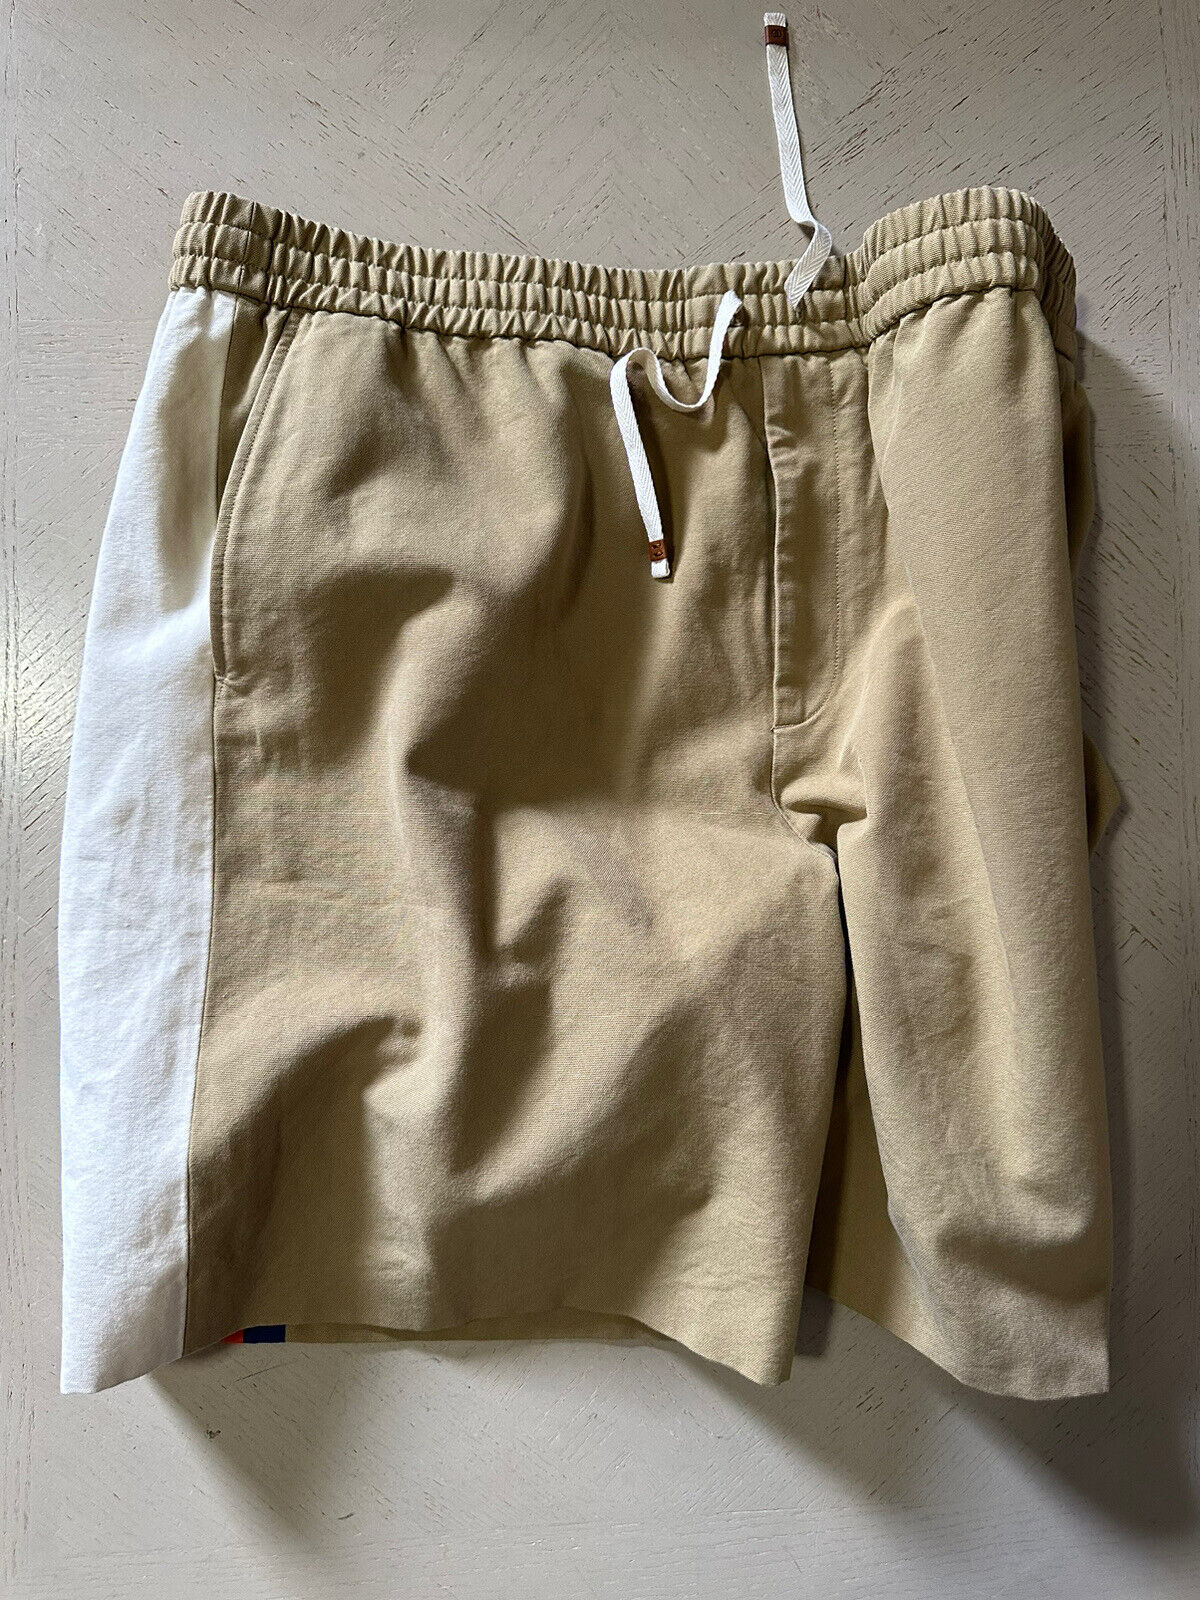 Neu mit Etikett: 1400 $ Gucci Herren-Shorts aus leichtem Baumwoll-Canvas, DK Beige/Mul. 40 US/56 Eu